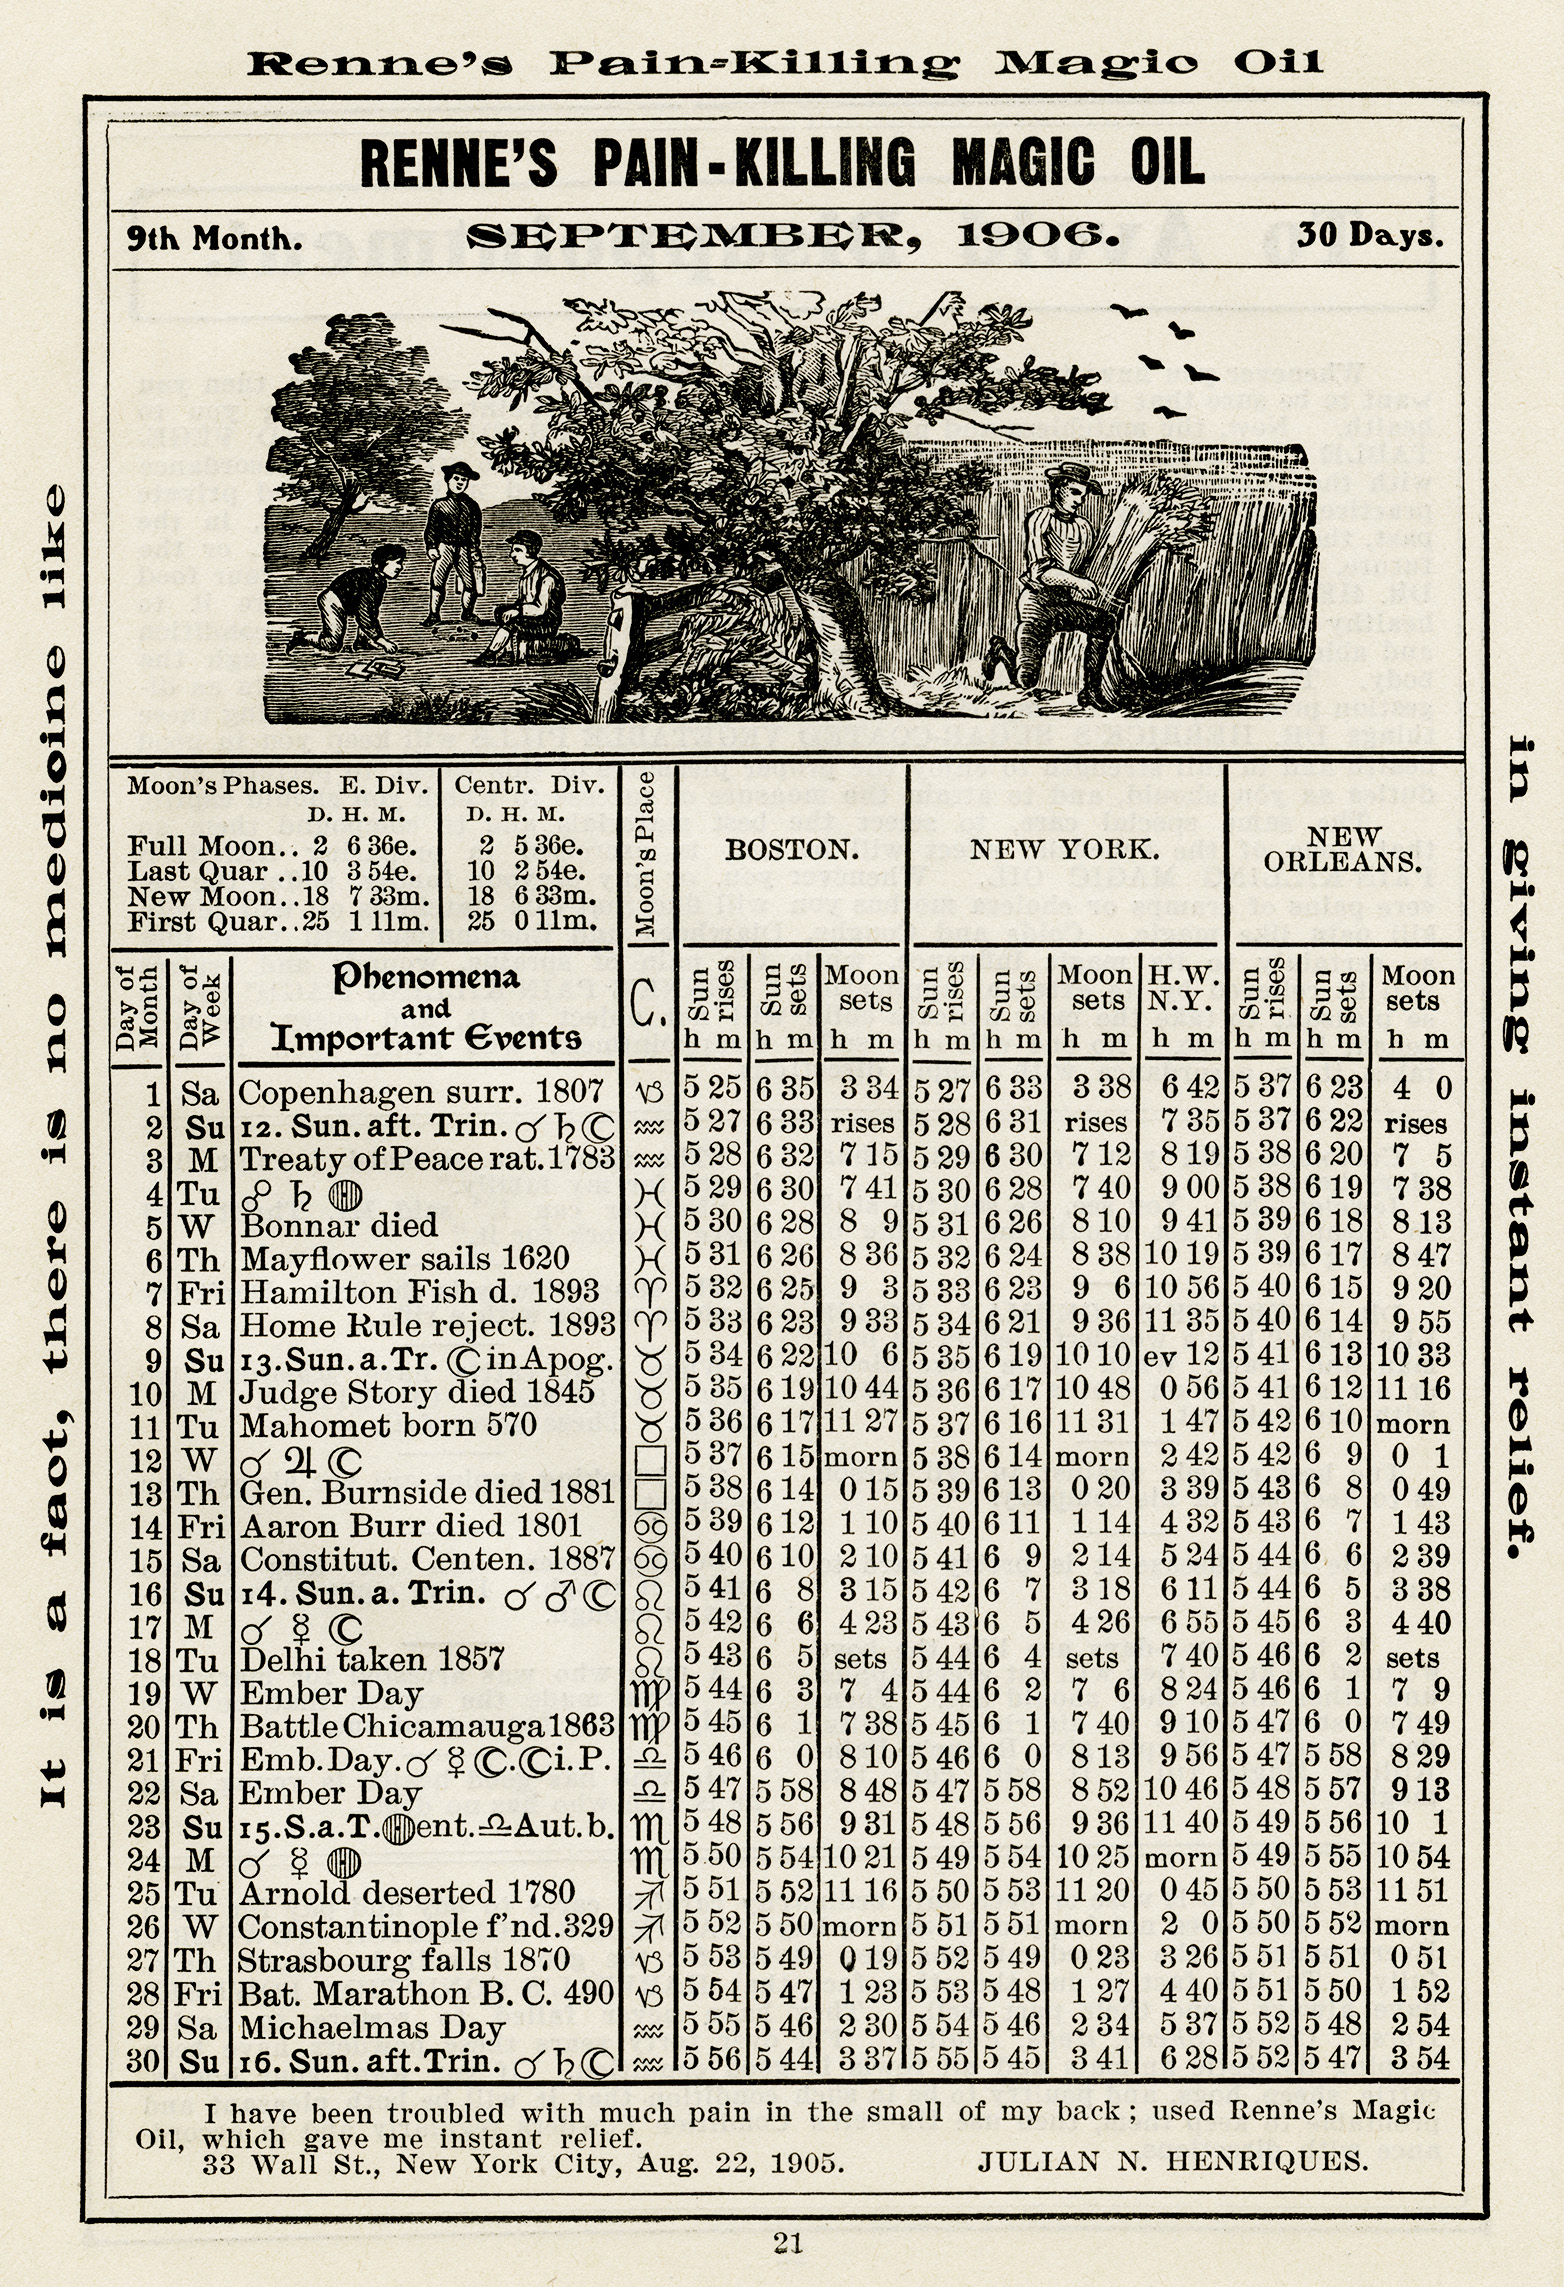 almanac september 1906, herricks almanac, old book page, vintage ephemera, free digital printable